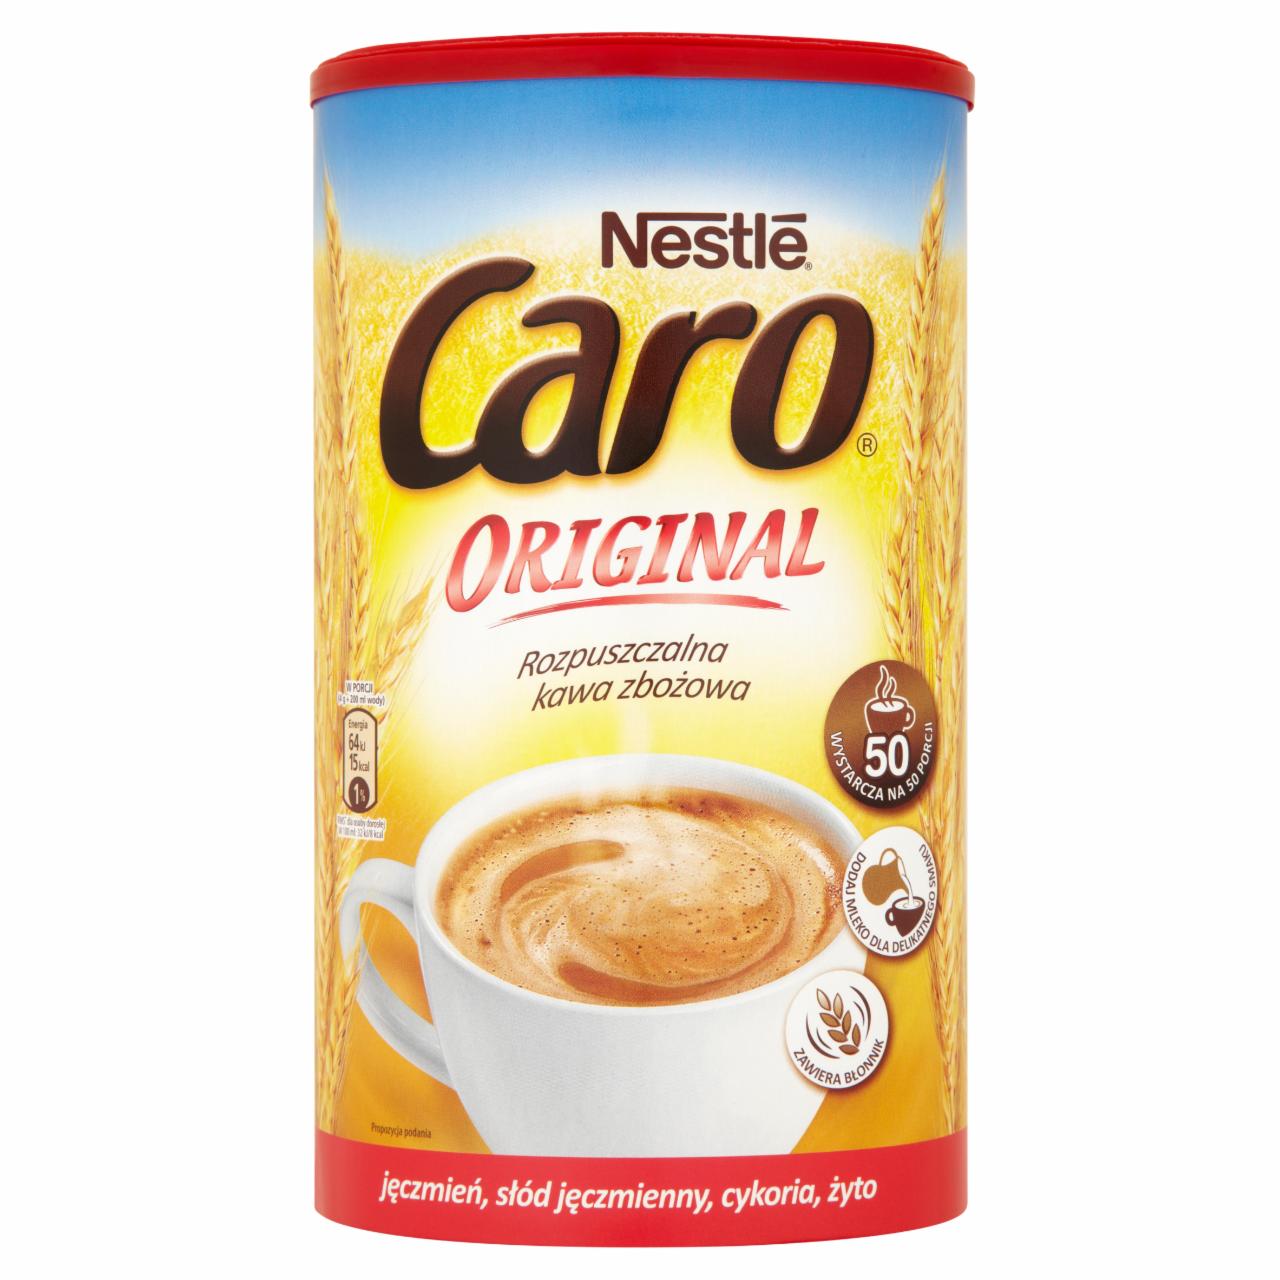 Zdjęcia - Caro Original Rozpuszczalna kawa zbożowa 200 g